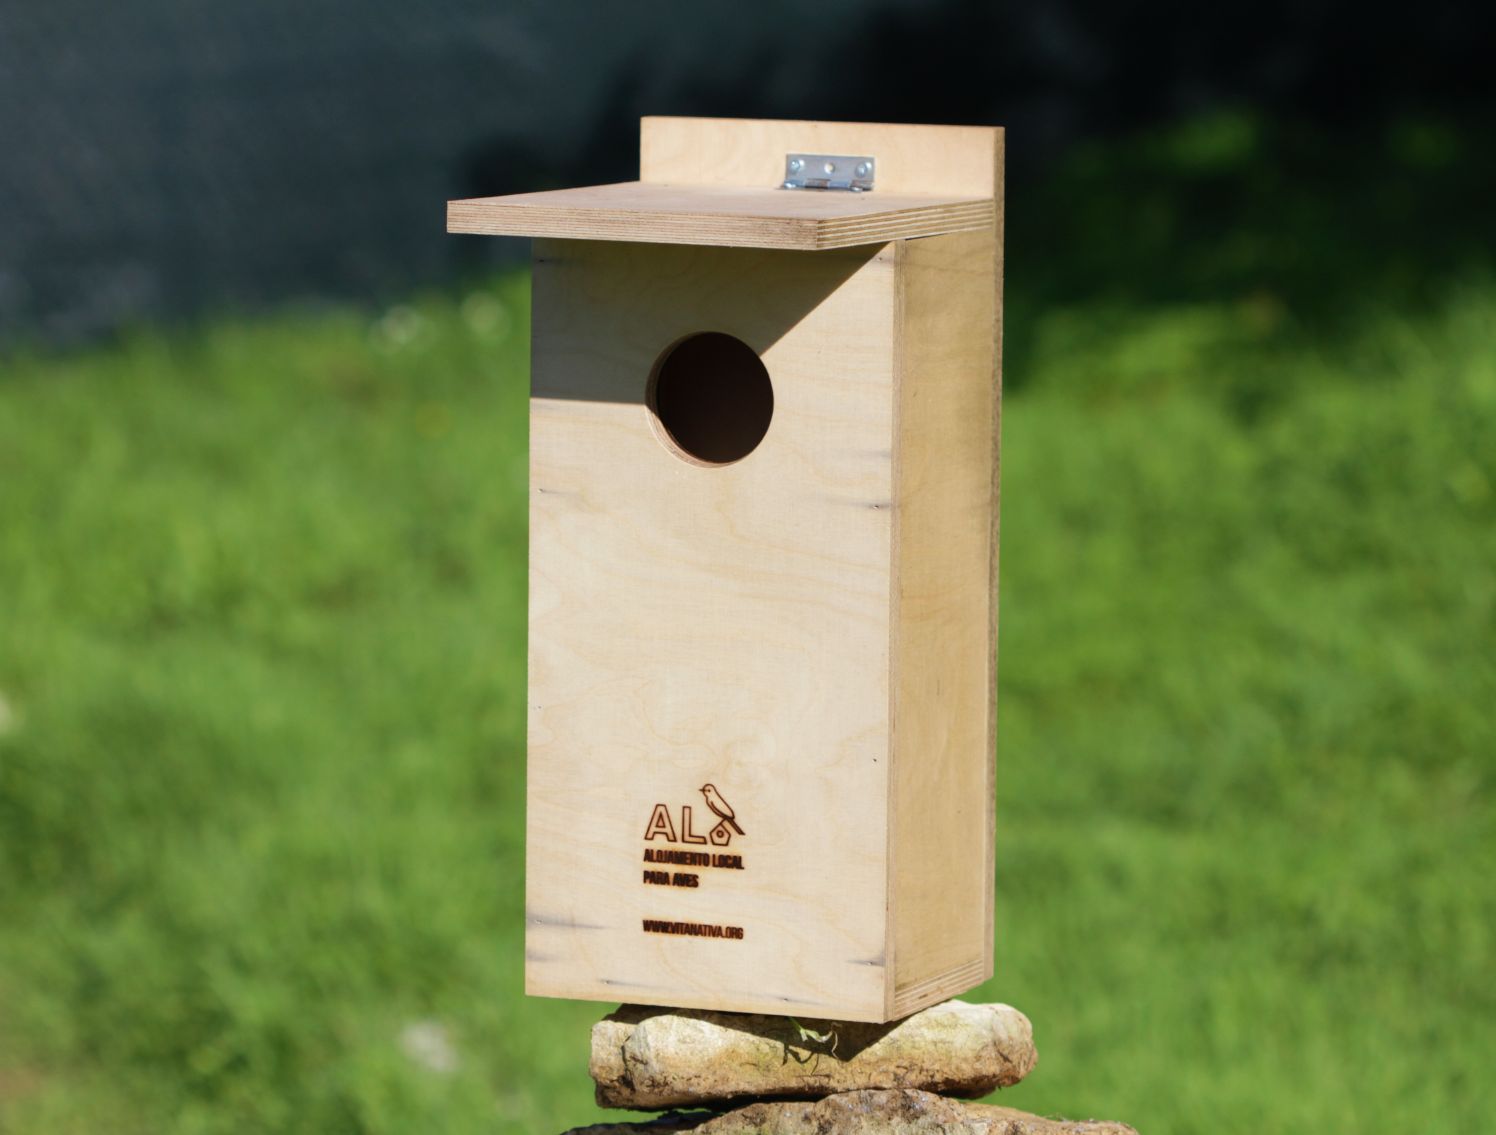 "Alojamento Local para Aves" avança com primeira caixa-ninho na Ria Formosa